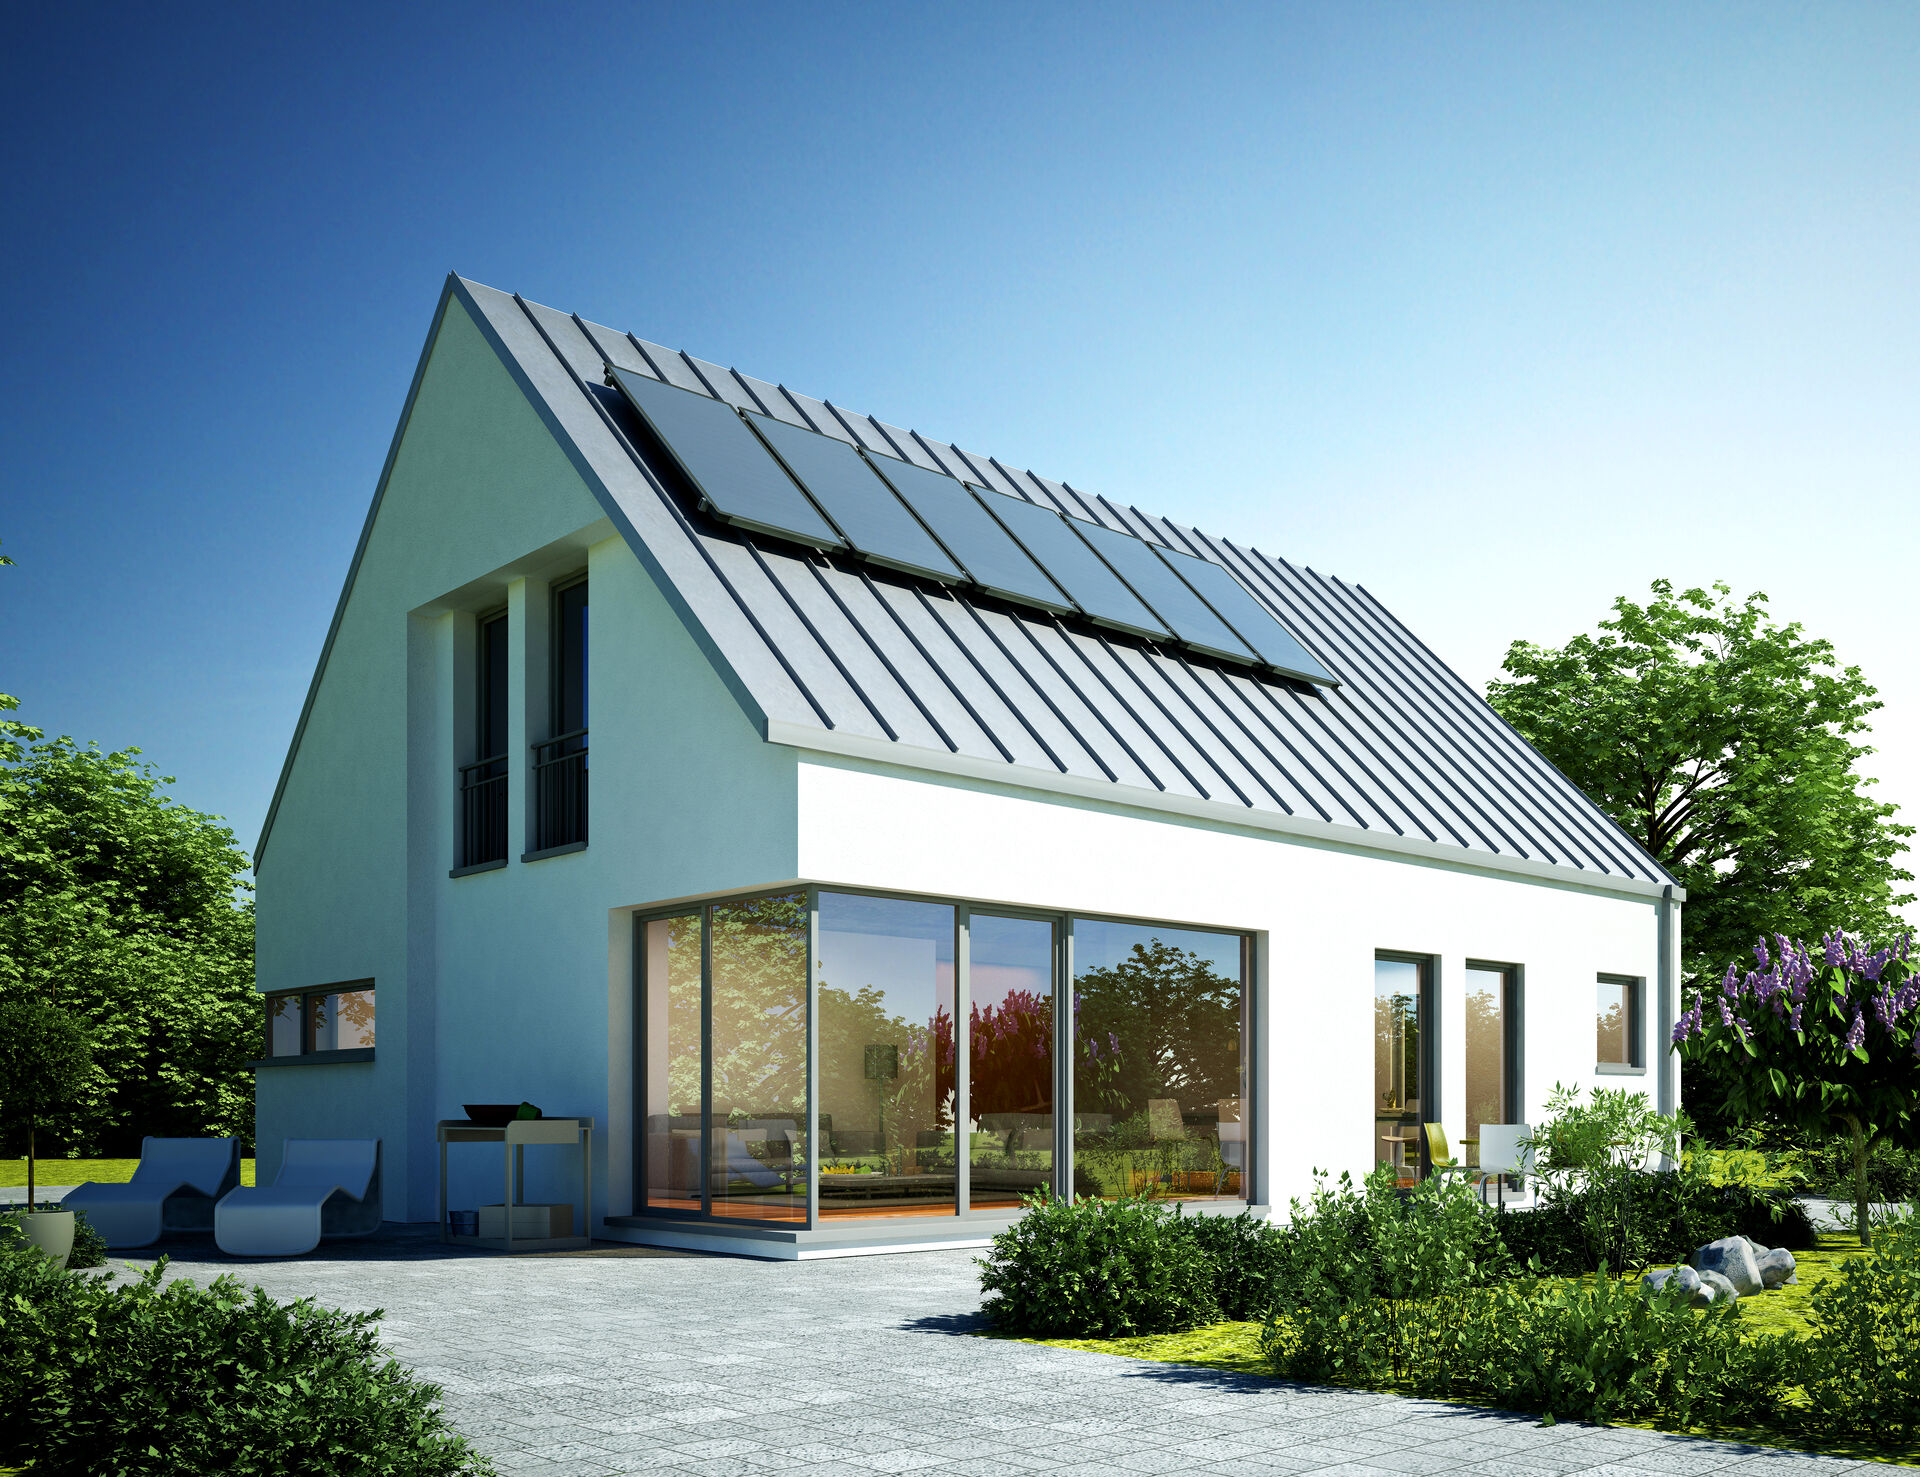 Ein Haus mit einer Solaranlage auf dem Dach